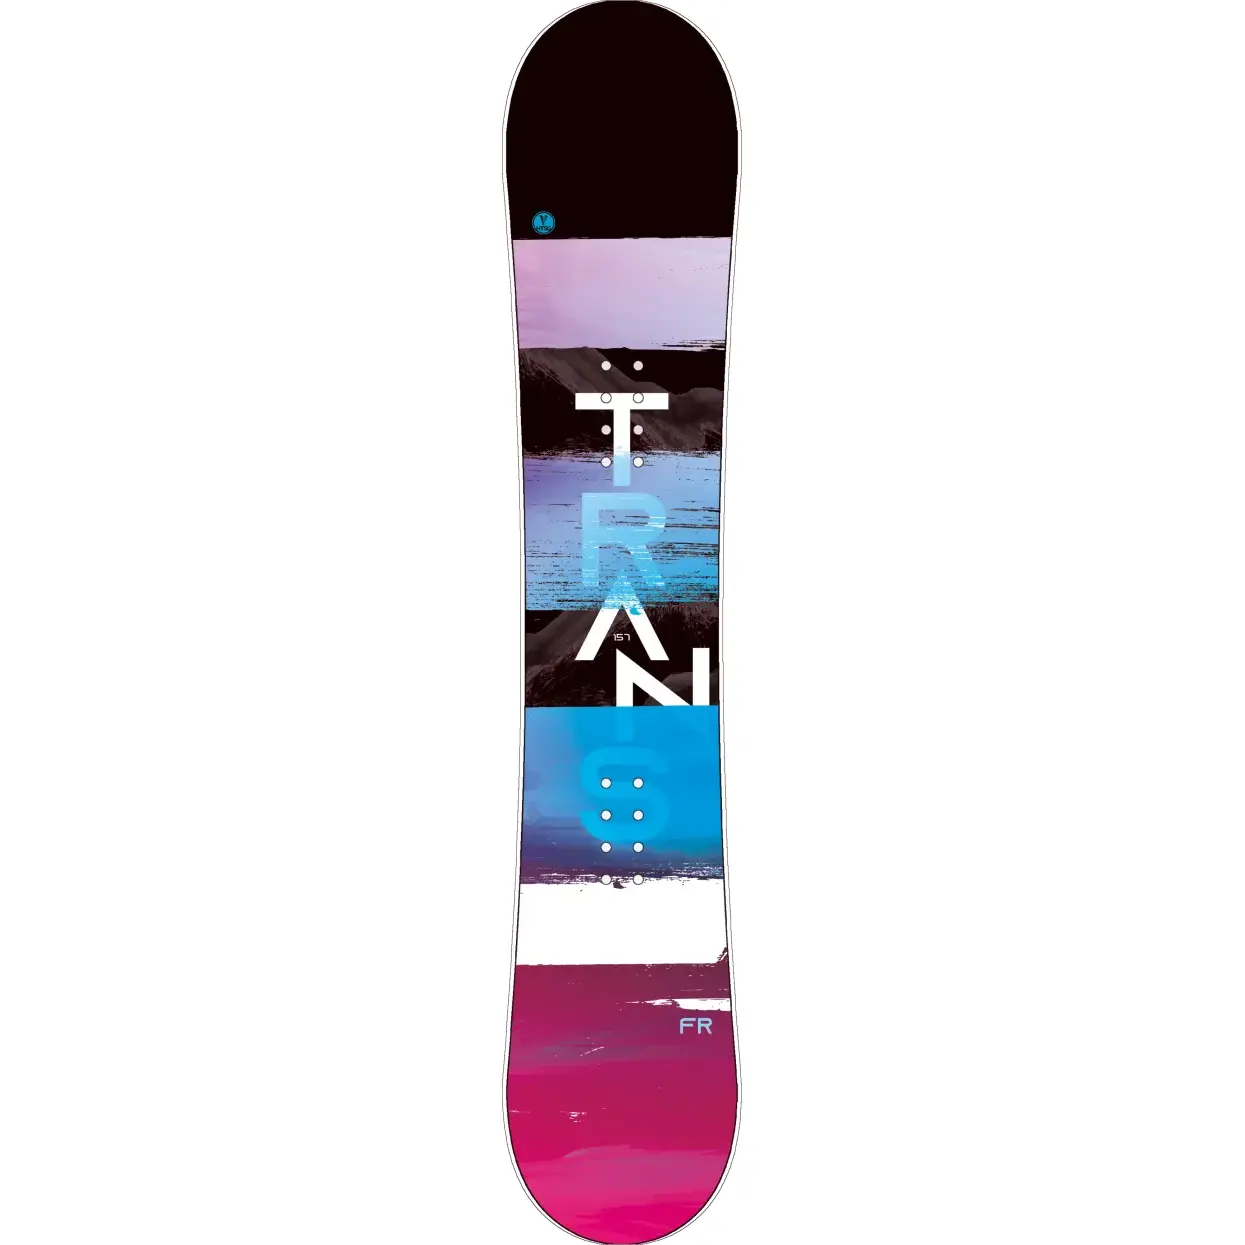 Snowboard Trans FR flatrocker magenta, model 2020